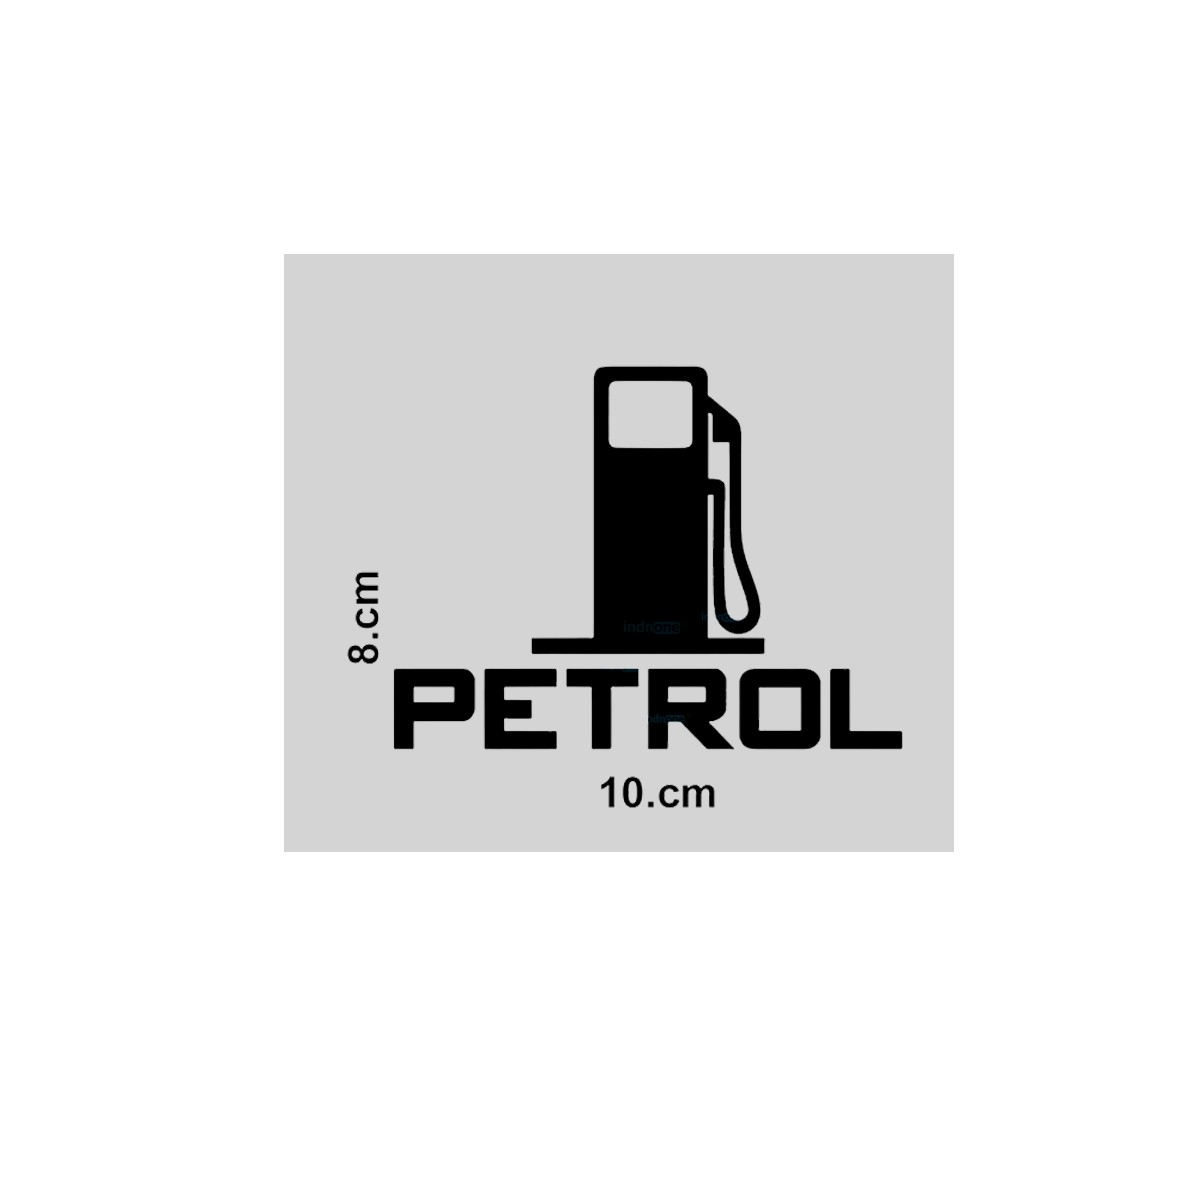 ARWY® Decorative Petrol Decal Vinyl Car Sticker for car Fuel Tank Petrol  car Sticker (Green) : Amazon.in: Car & Motorbike